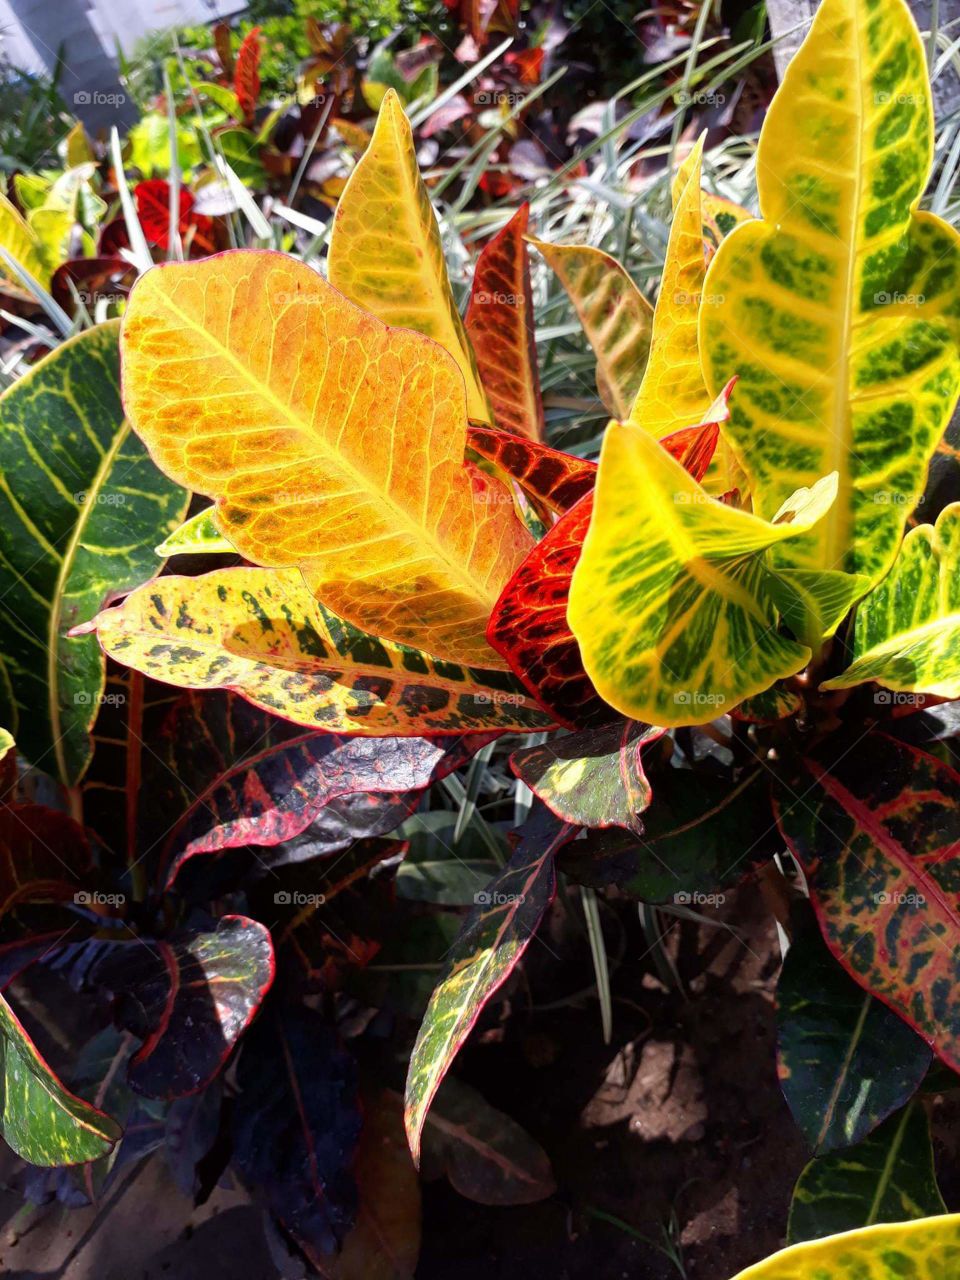 Encontrar plantas con distintos colores en una sola, es increíble la naturaleza.